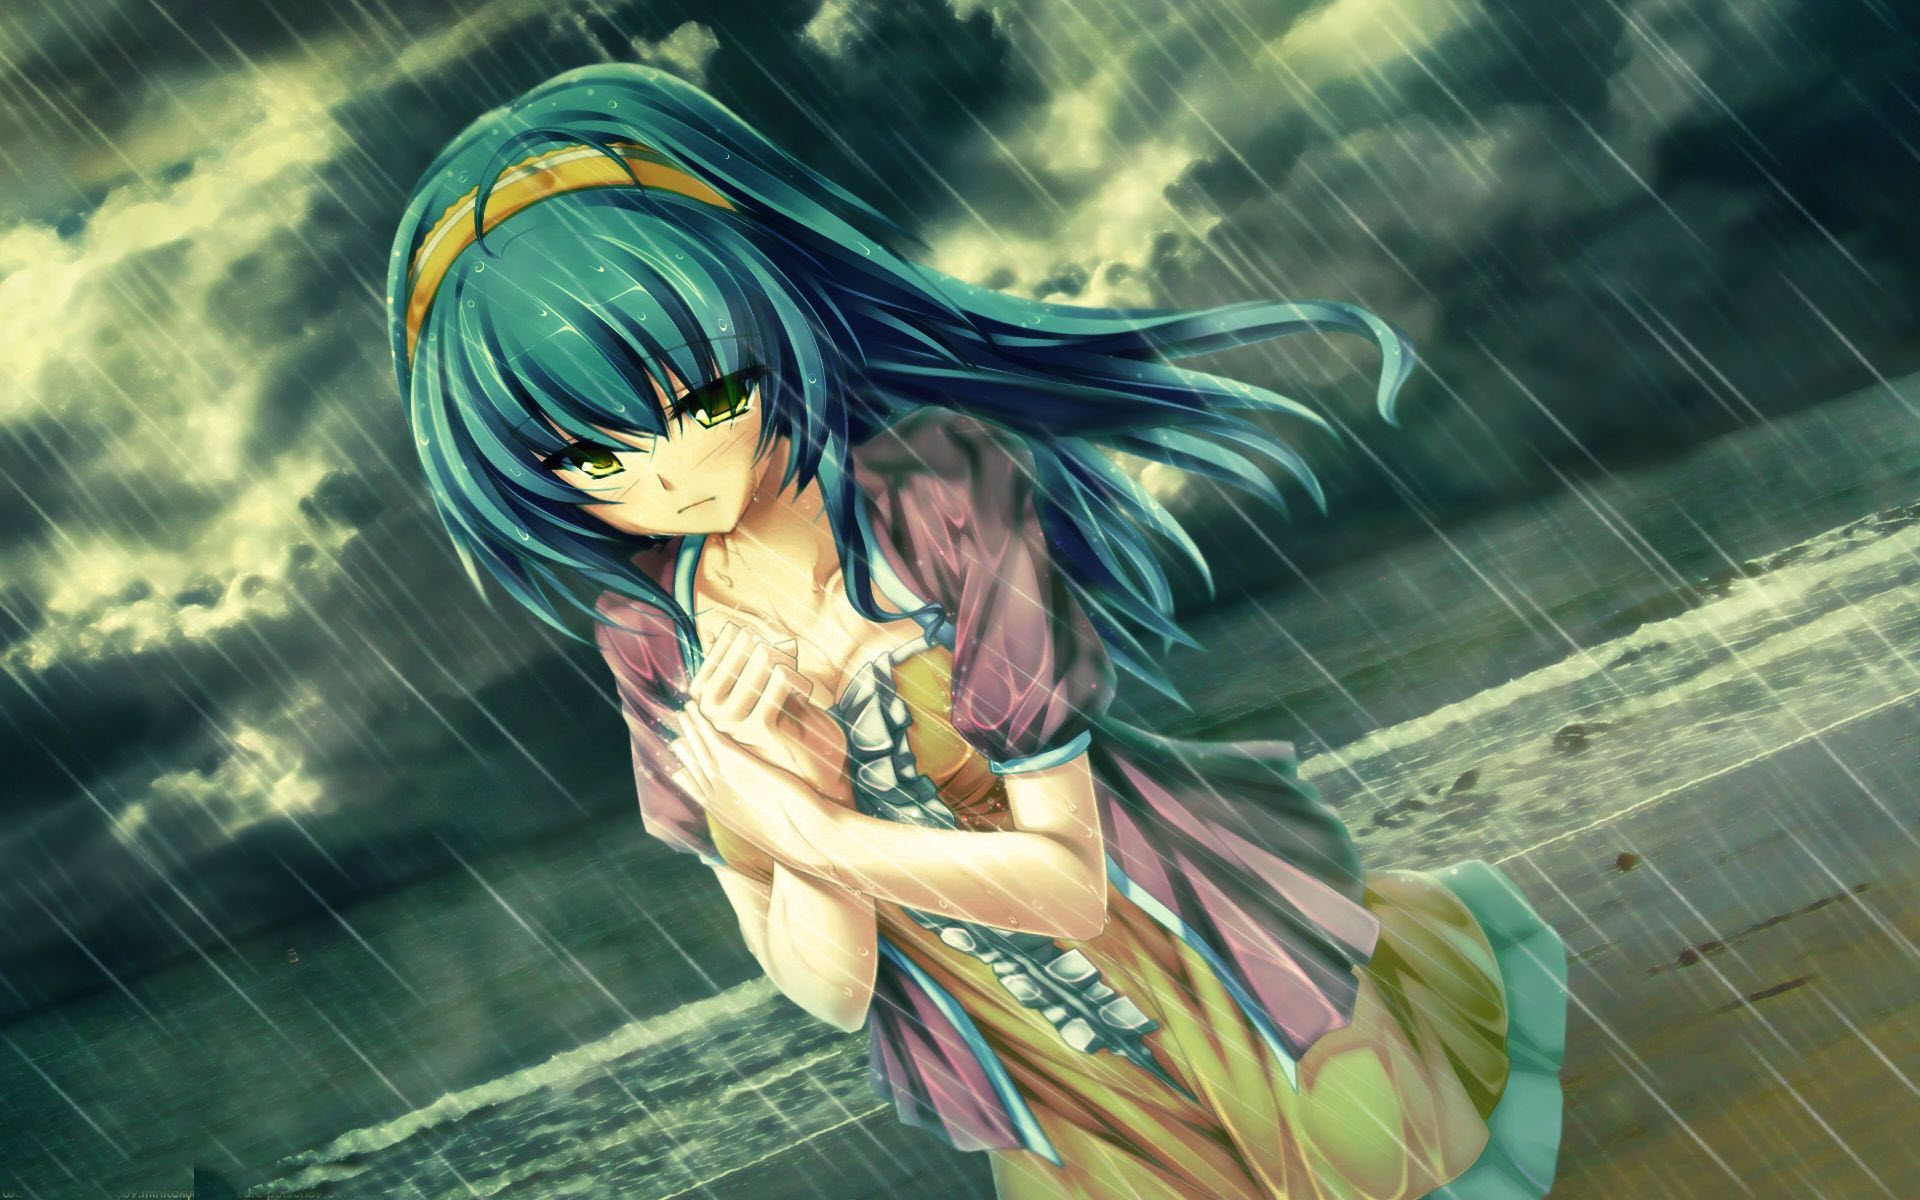 Hình ảnh anime buồn, khóc trong mưa